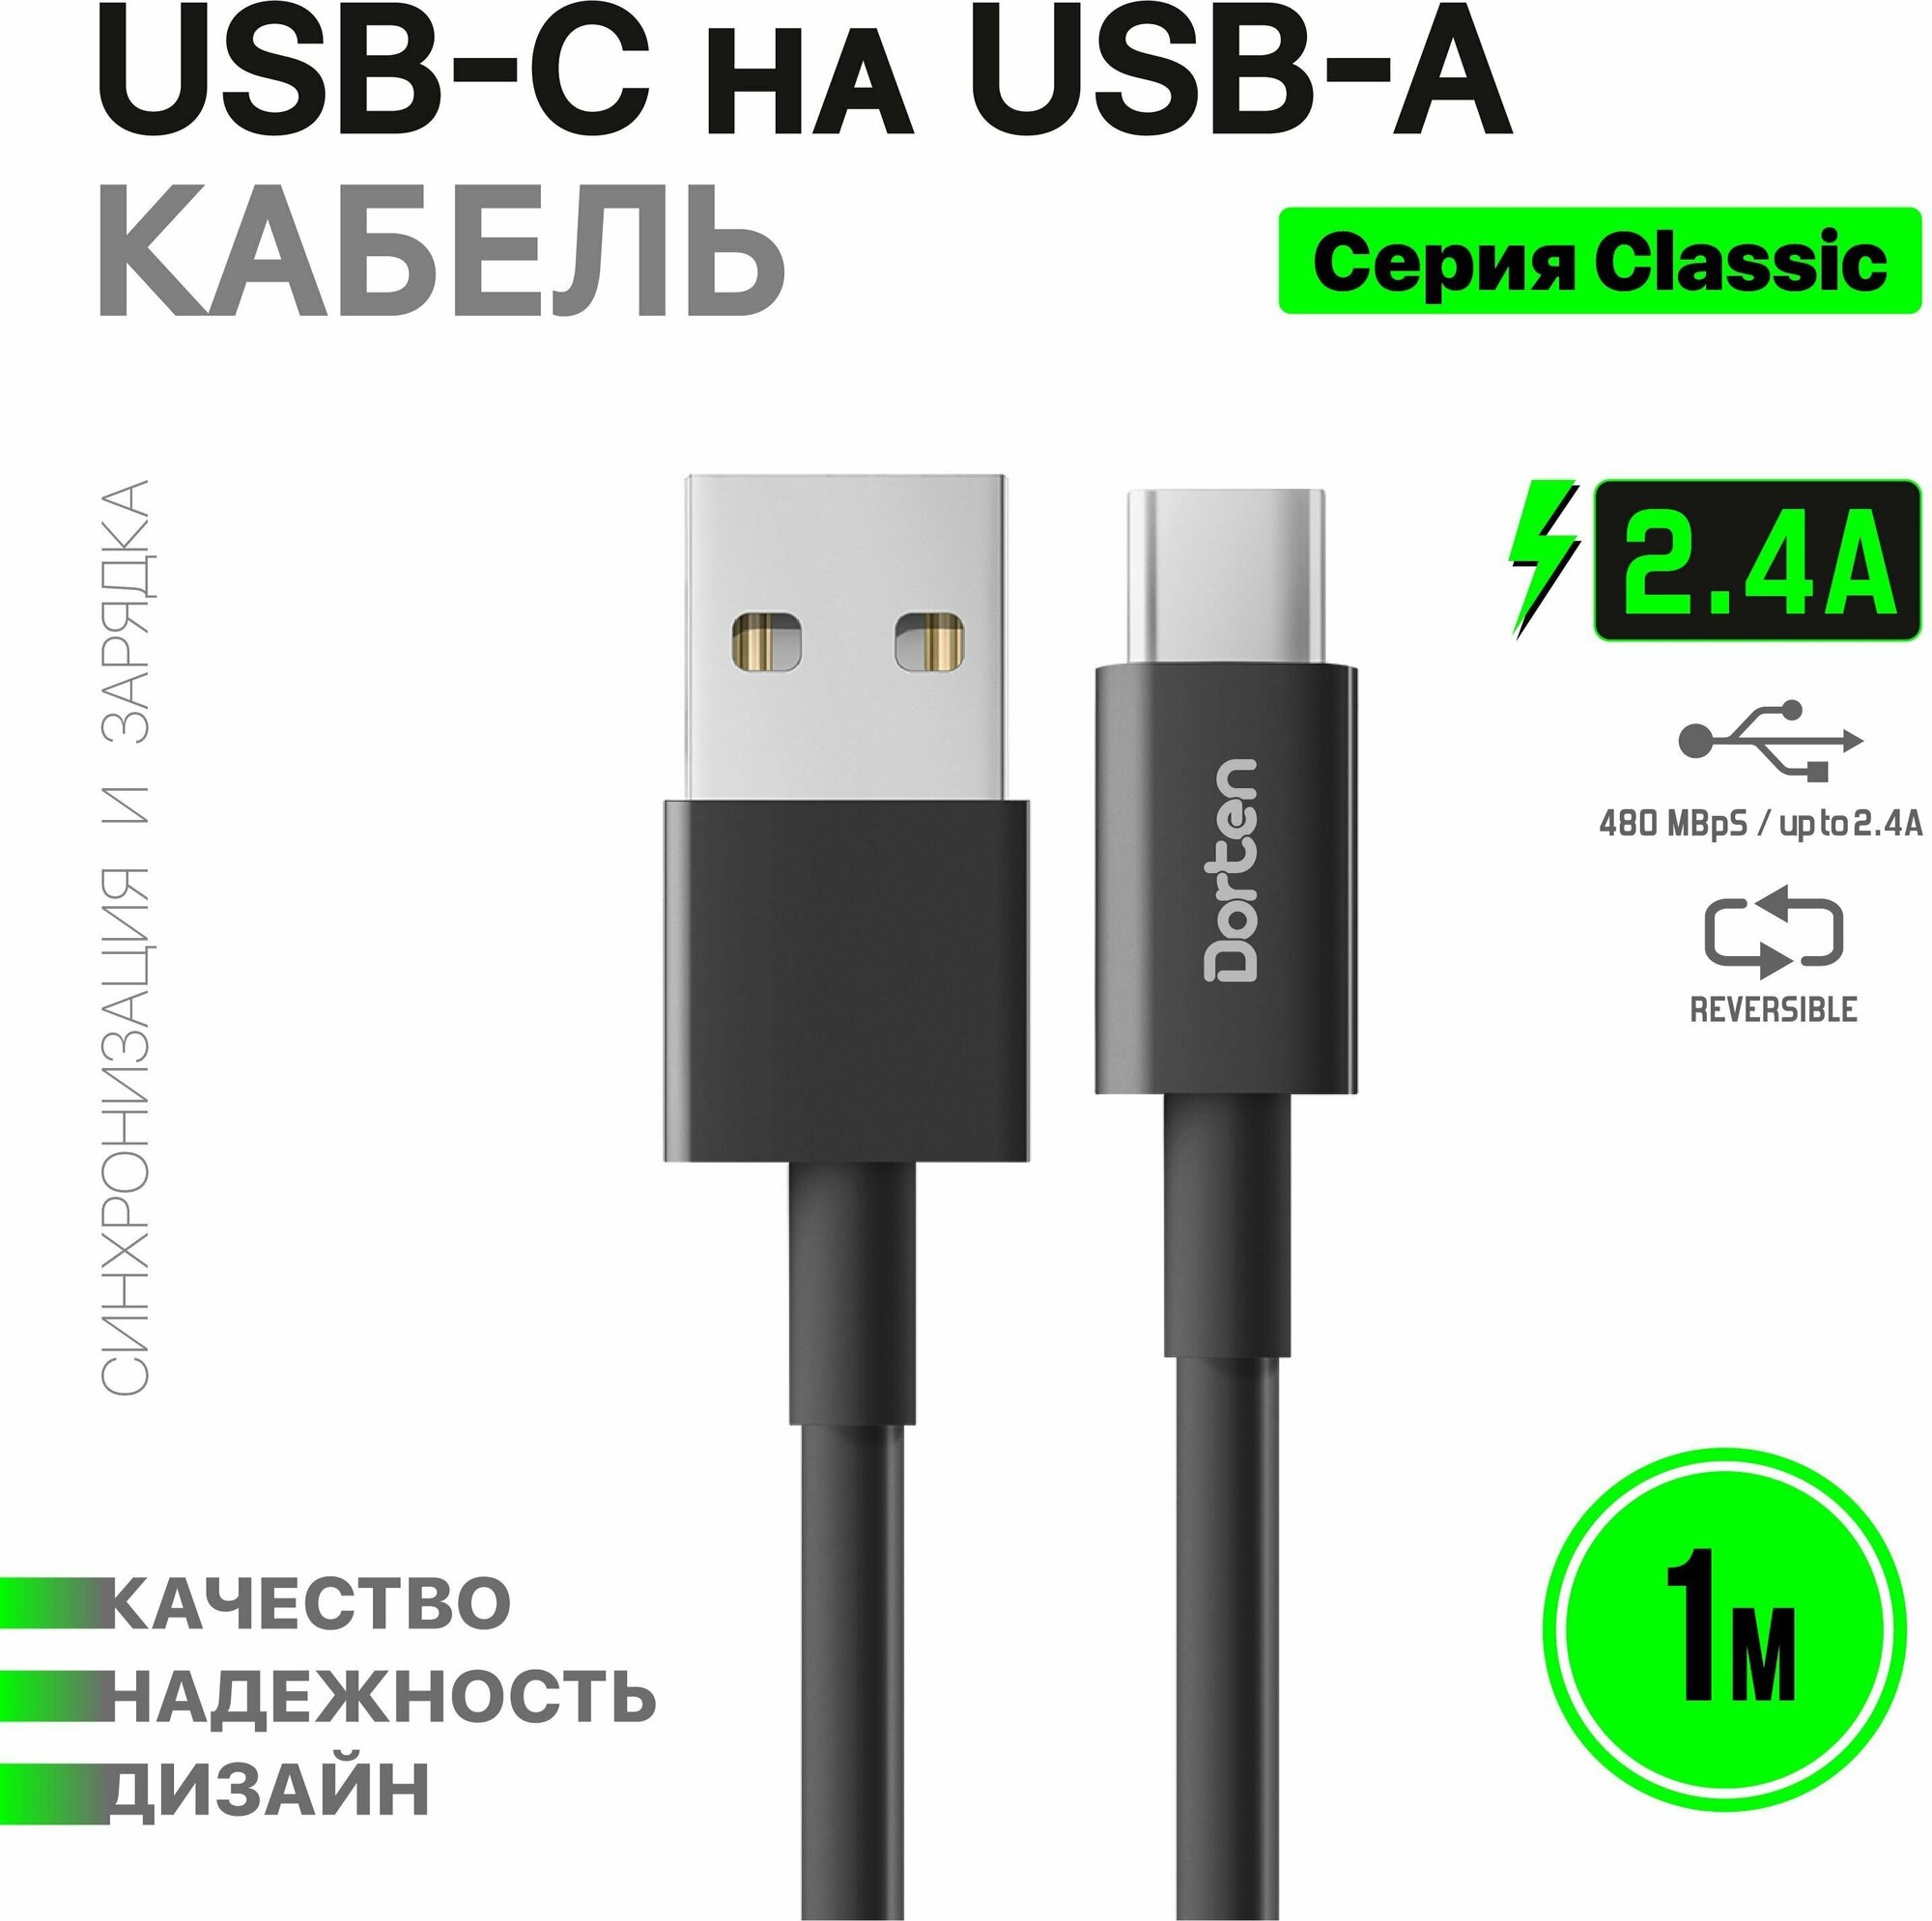 Кабель USB-C для зарядки телефона Dorten USB-C 1 метр: Classic series провод юсб 1м - Черный